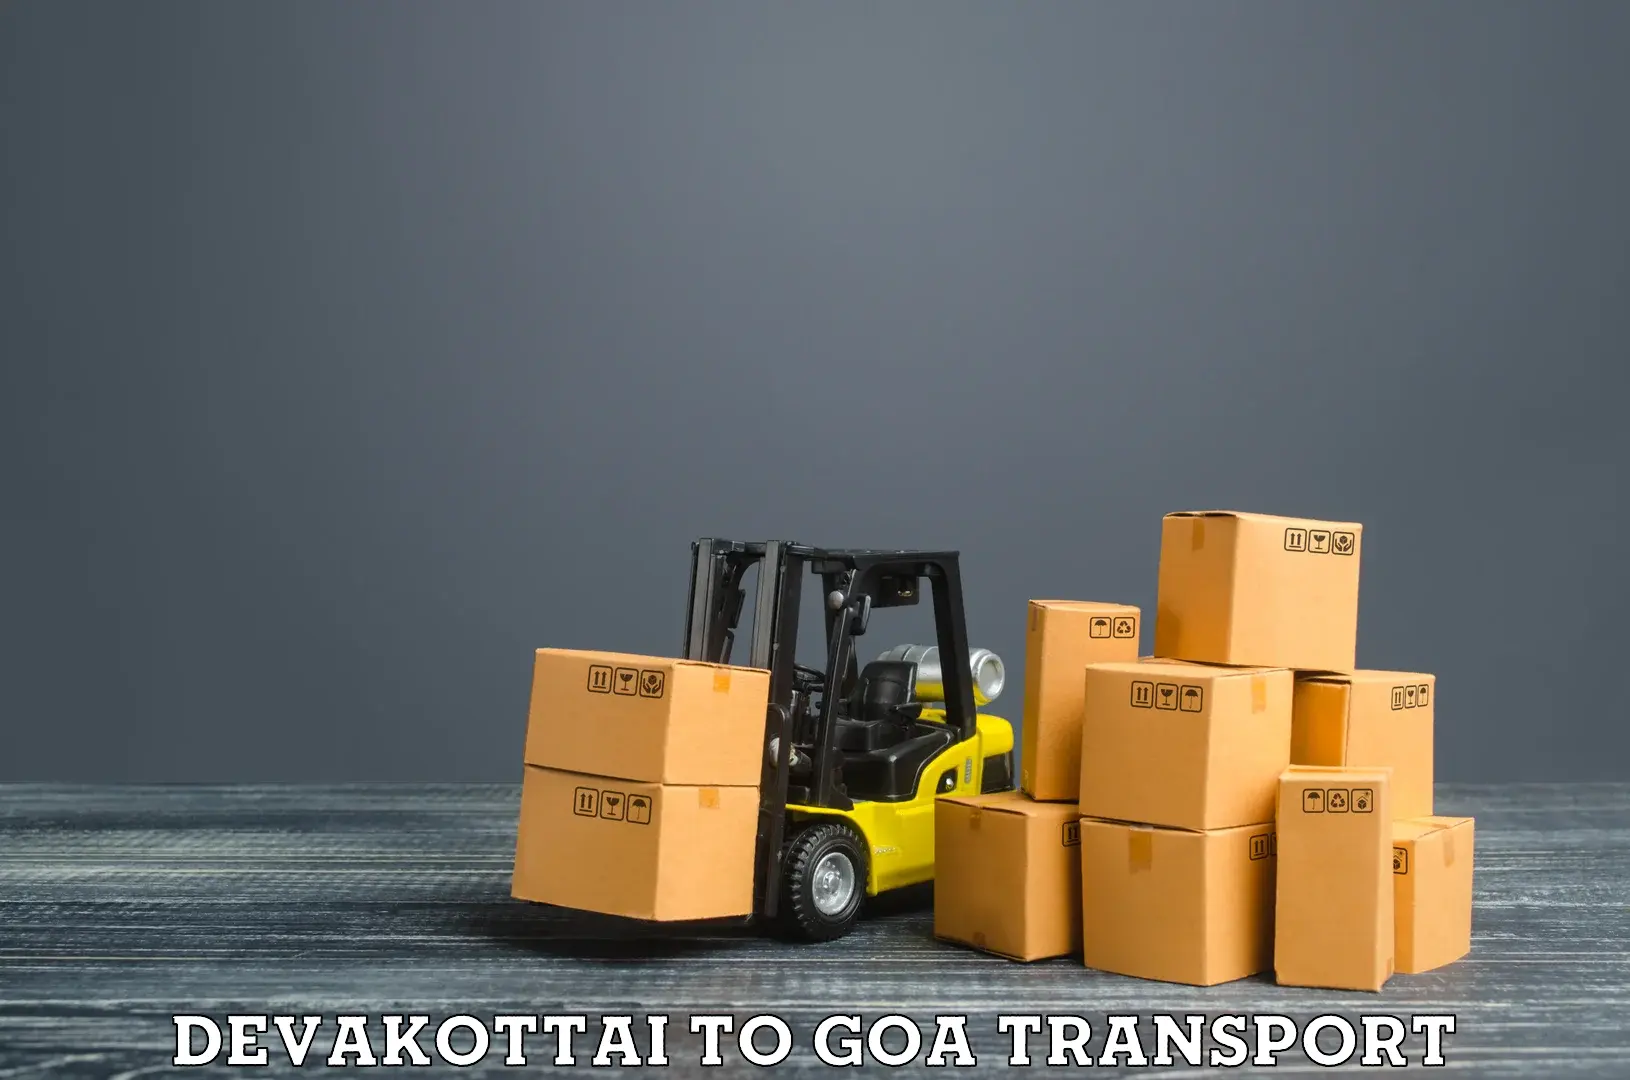 Daily transport service in Devakottai to Bicholim